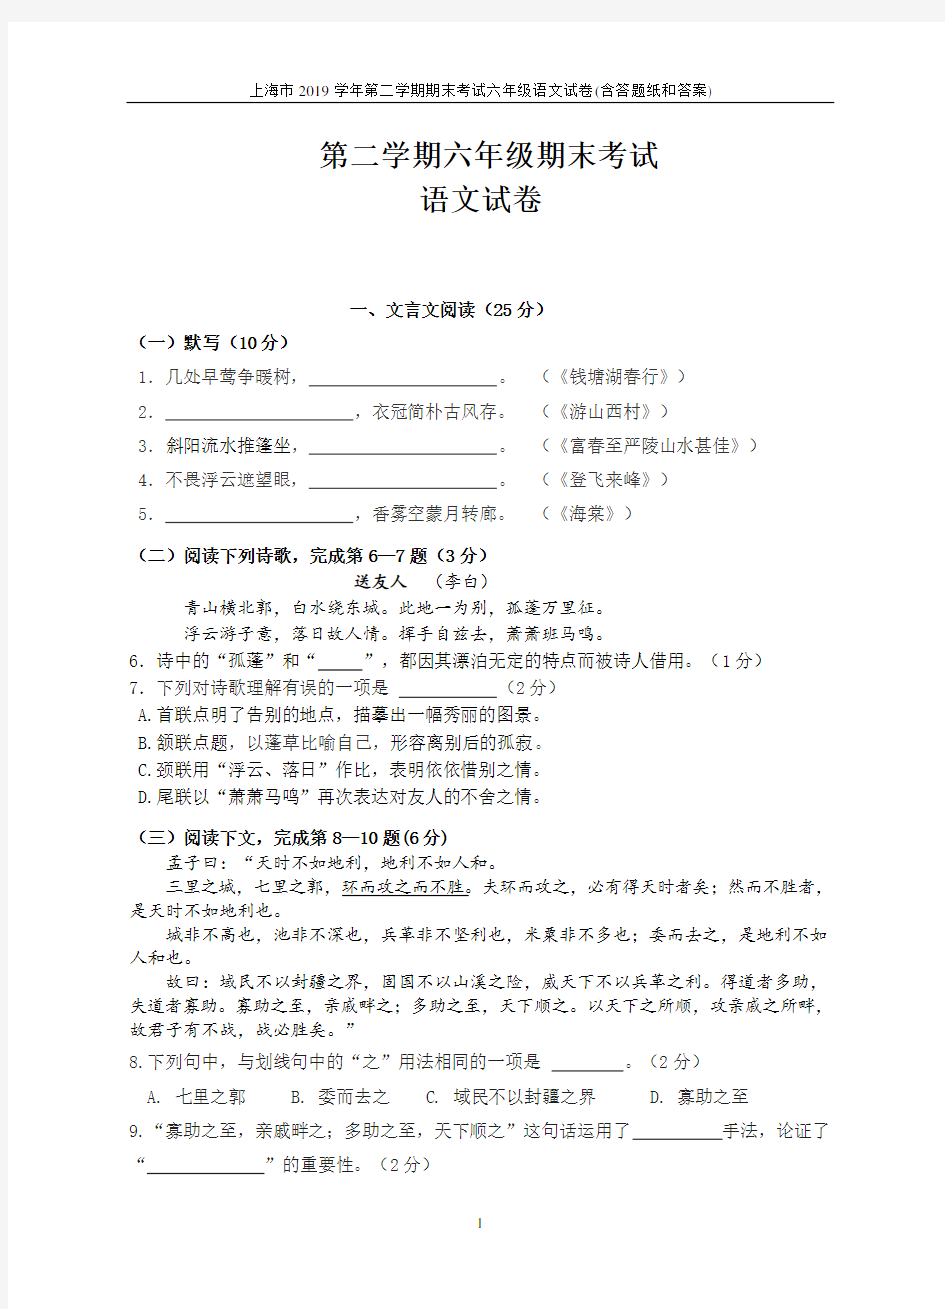 上海市2019学年第二学期期末考试六年级语文试卷(含答题纸和答案)